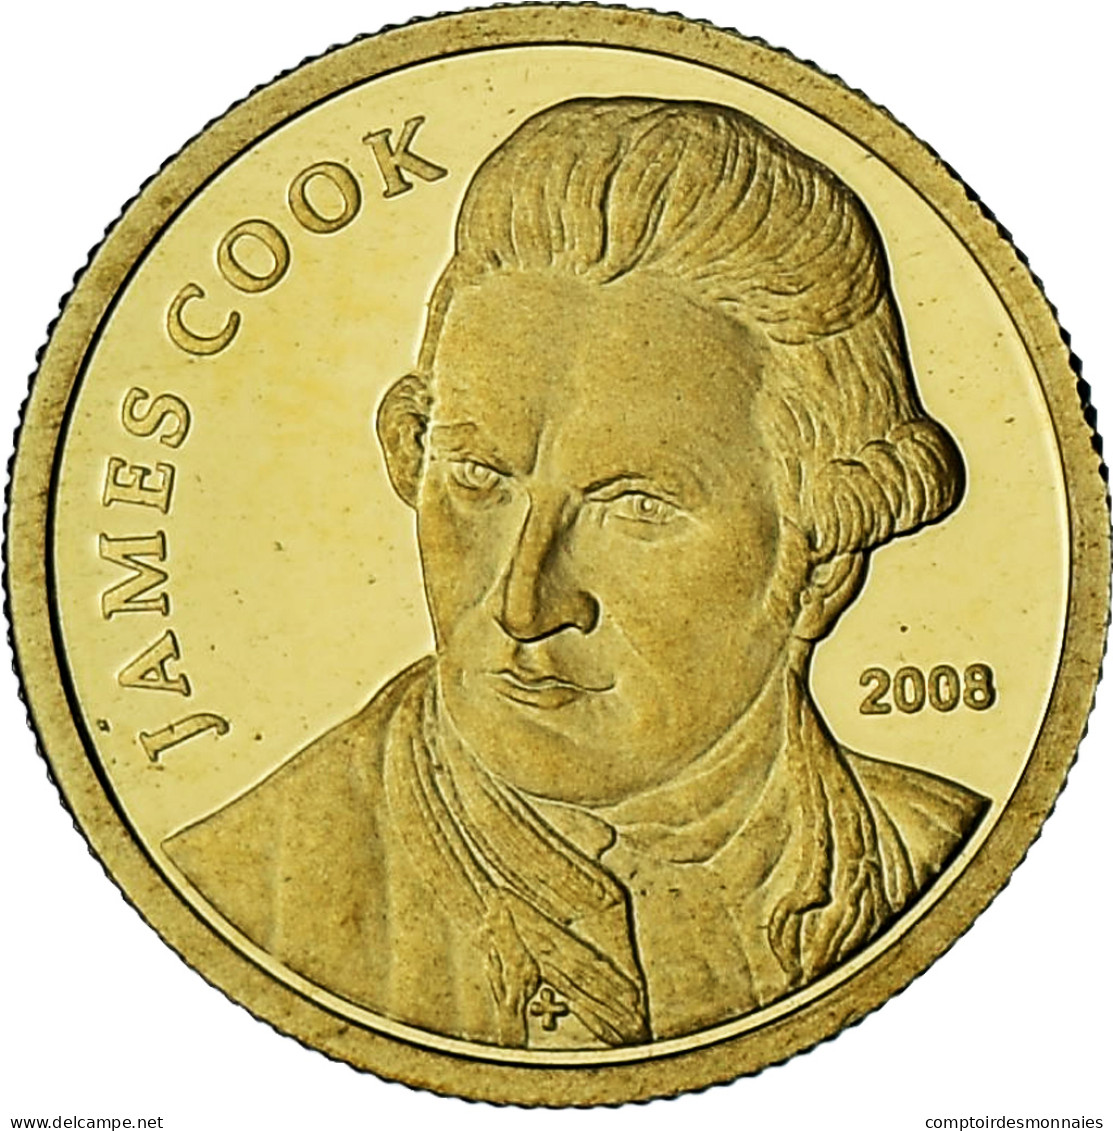 Îles Cook, Elizabeth II, James Cook, 10 Dollars, 2008, BE, FDC, Or - Cook